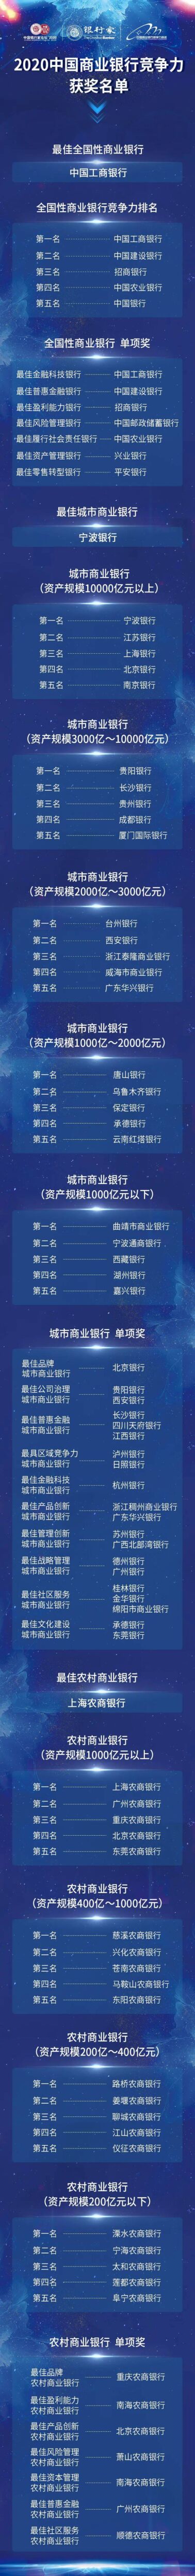 「独家」2020中国商业银行竞争力评价榜单发布